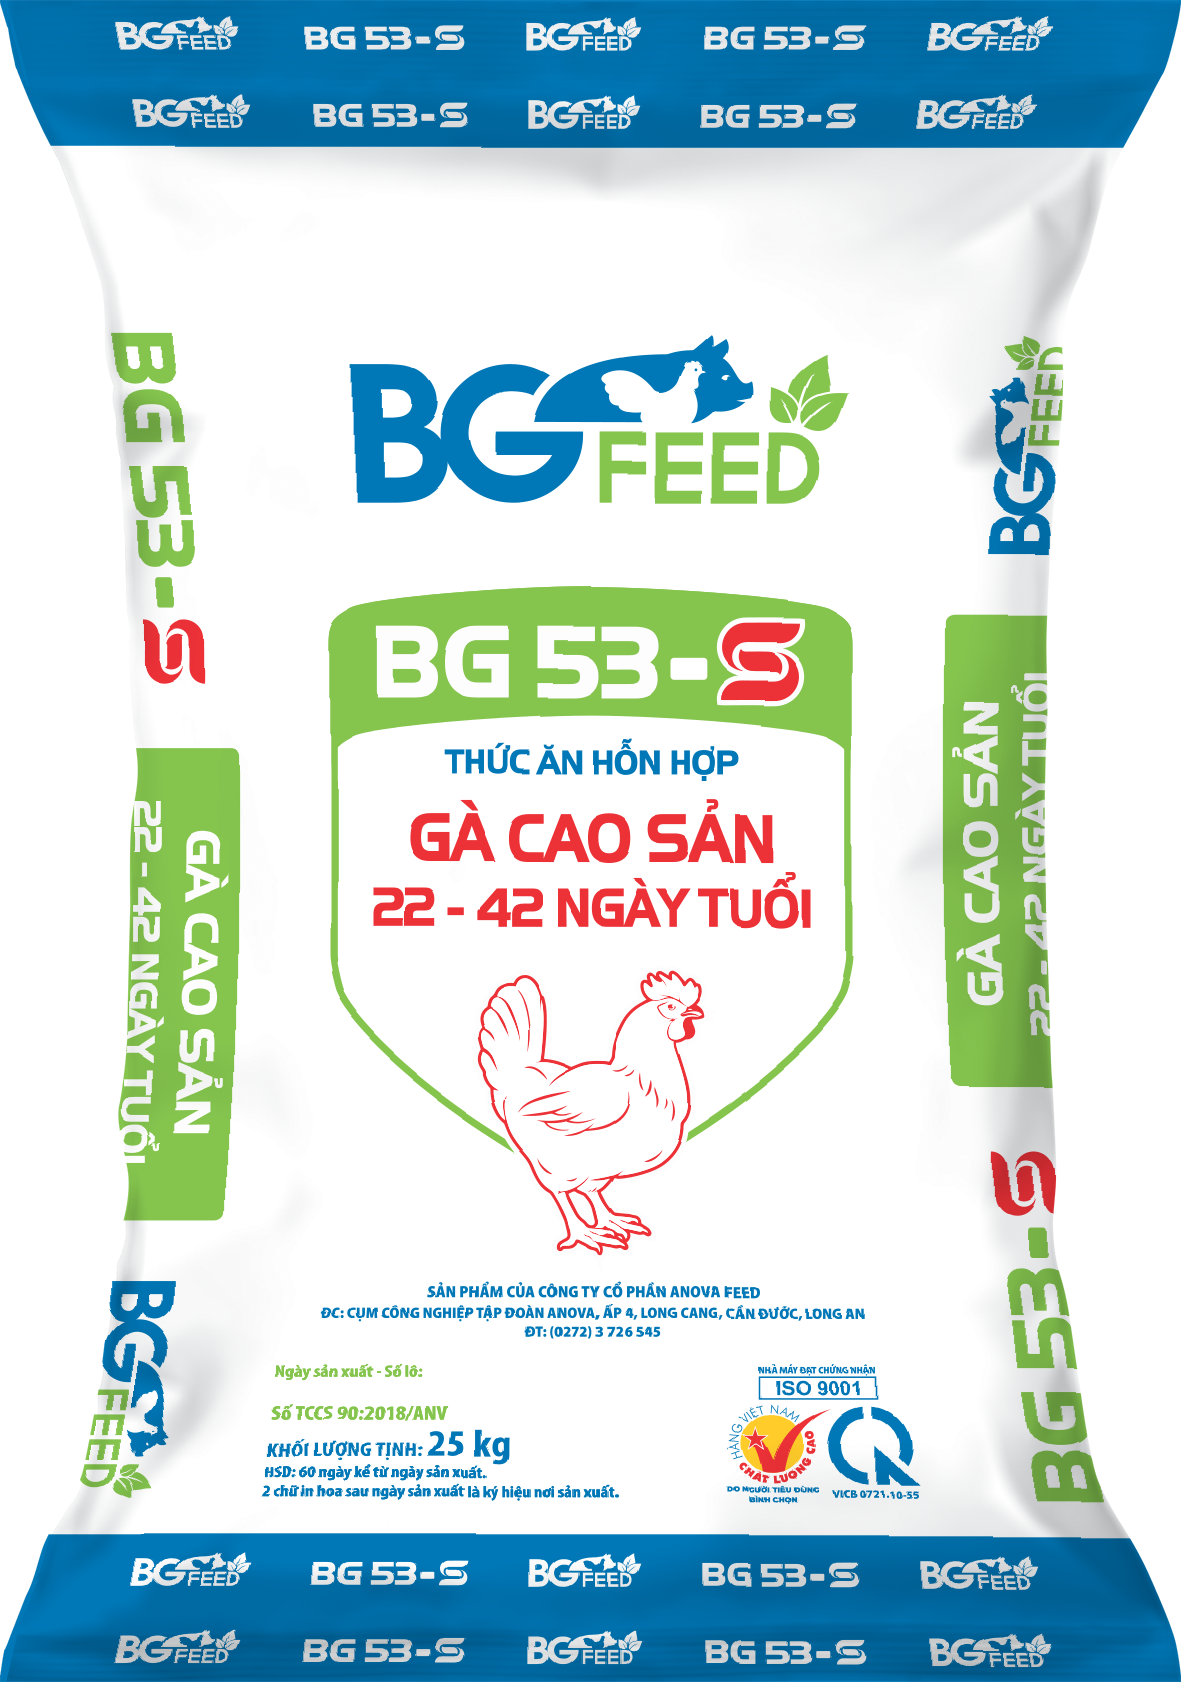 Thức ăn hỗn hợp GÀ CAO SẢN 22 - 42 ngày tuổi BG53 - S